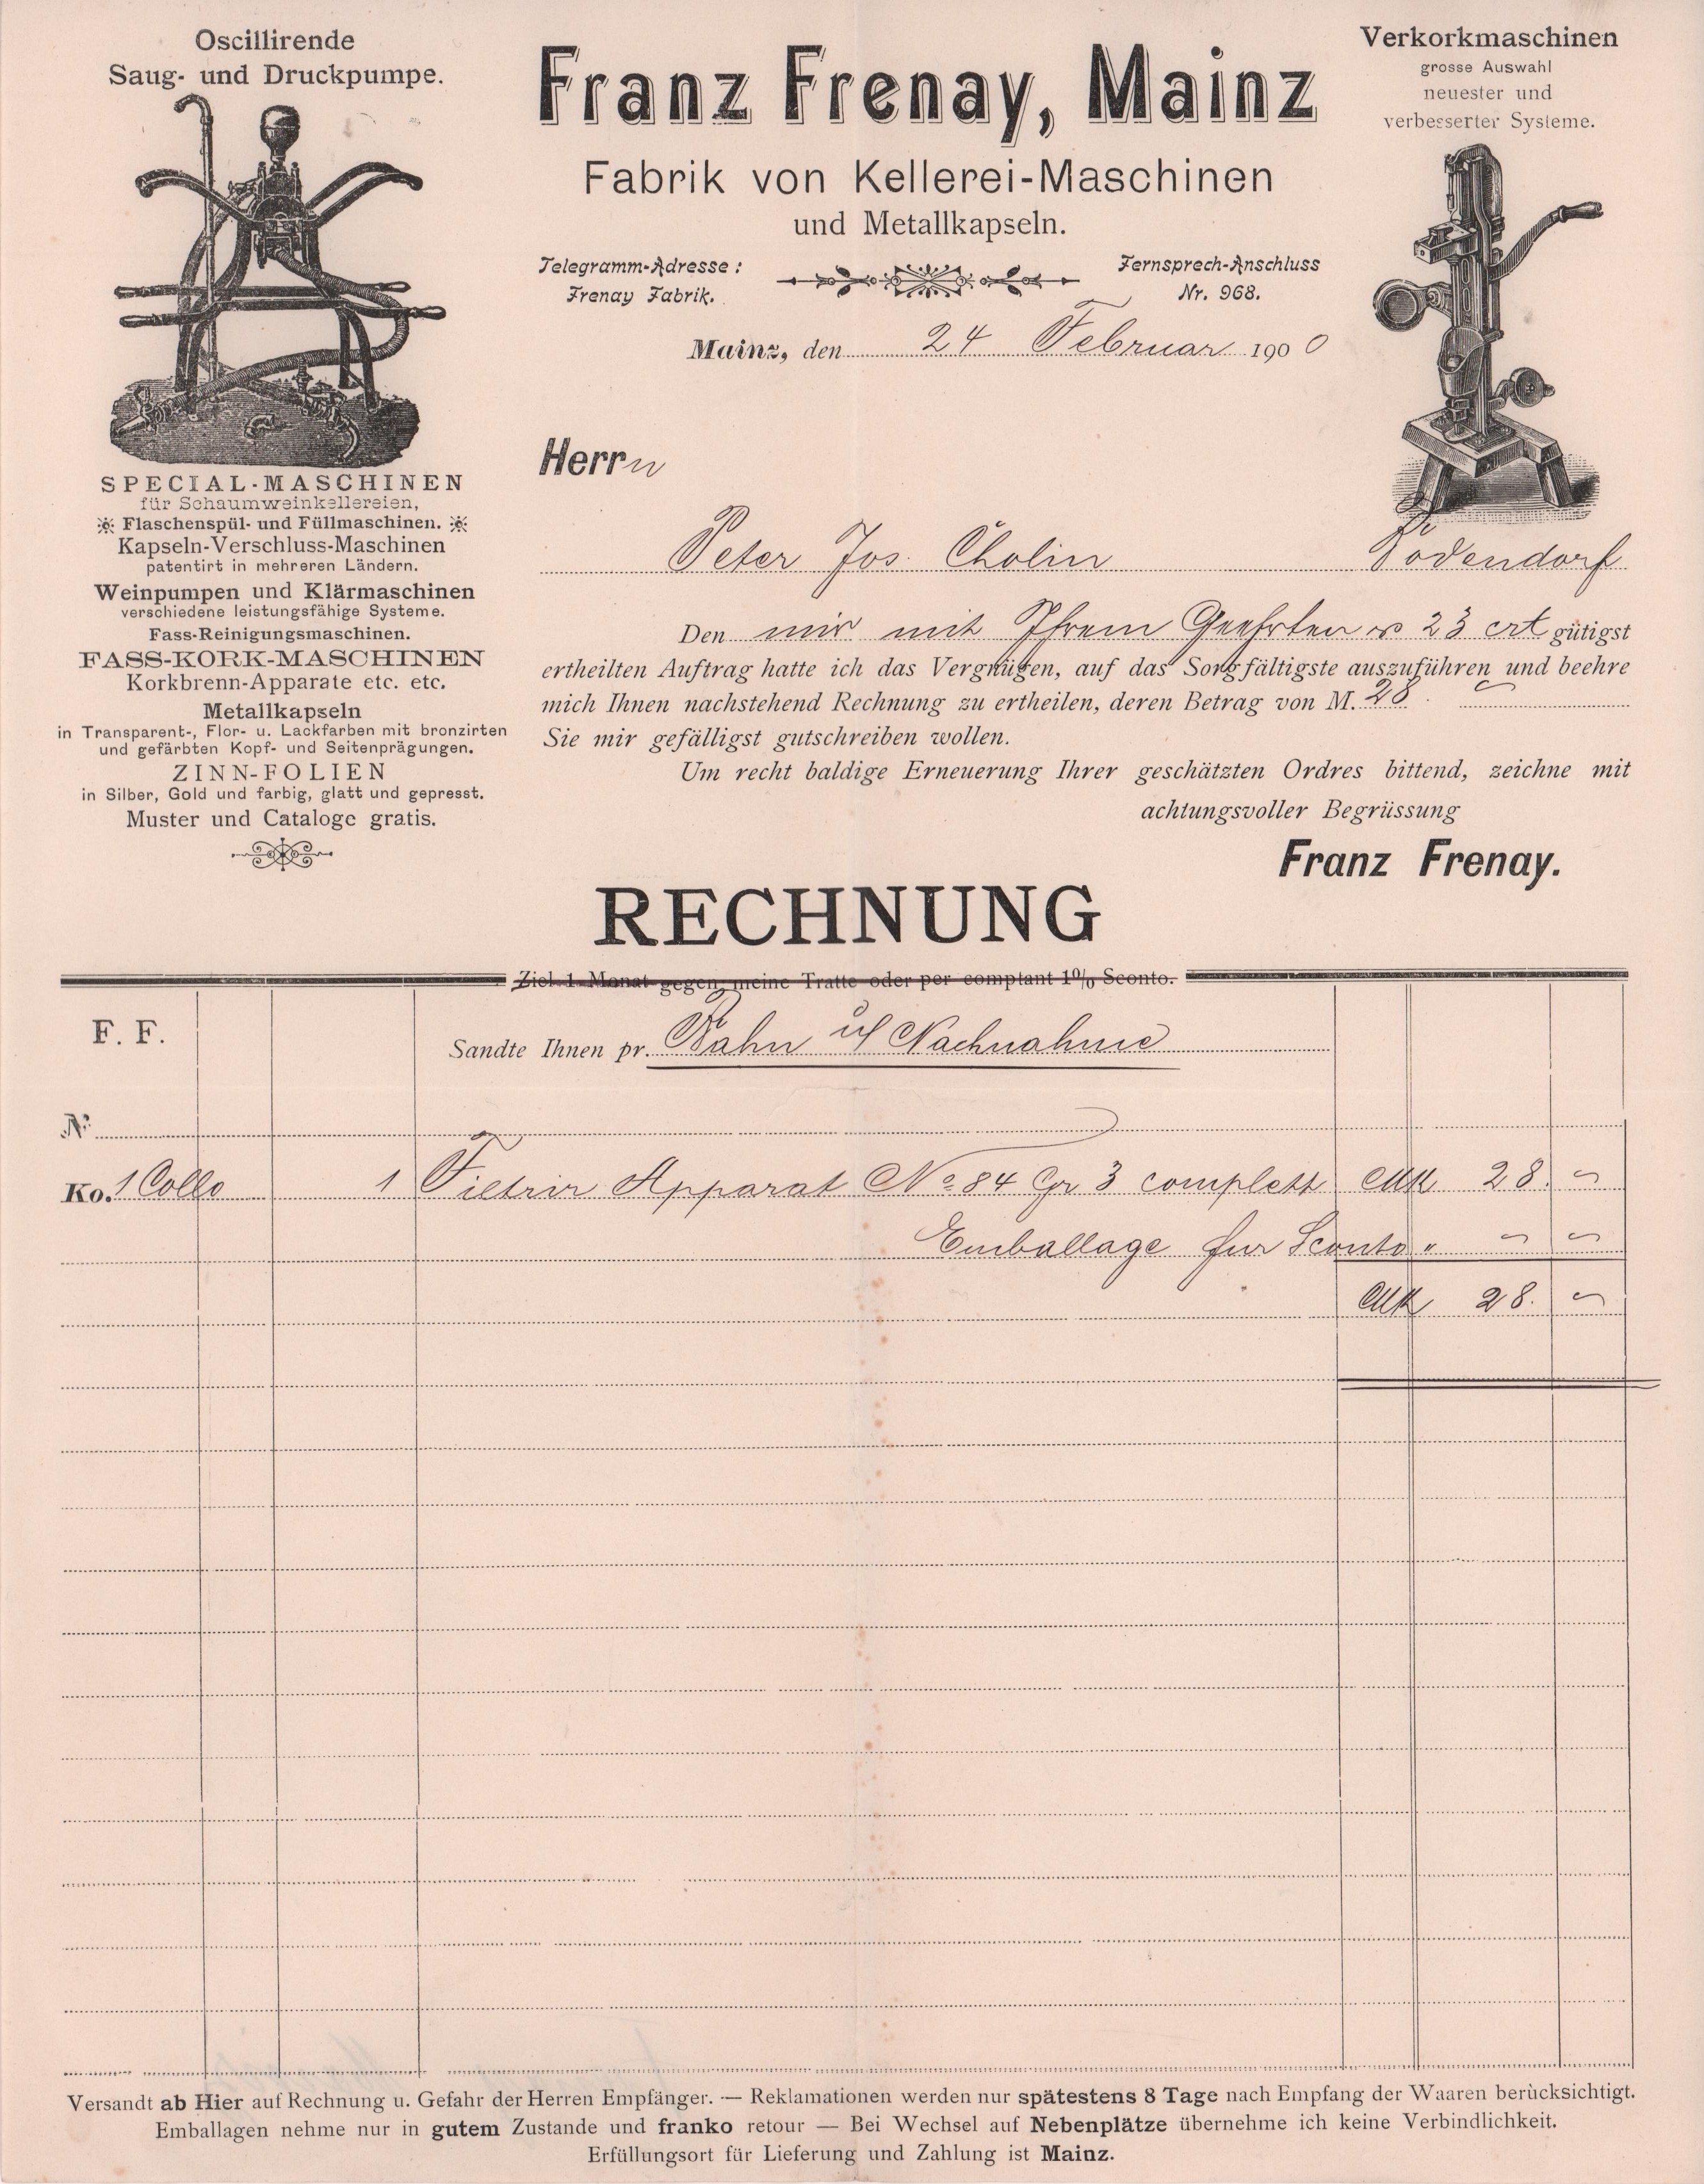 Lieferantenrechnung für einen Filterapperat von Franz Frenary in Mainz vom 24. 02. 1900 (Peter Cholin, Bad Bodendorf CC BY-NC-SA)